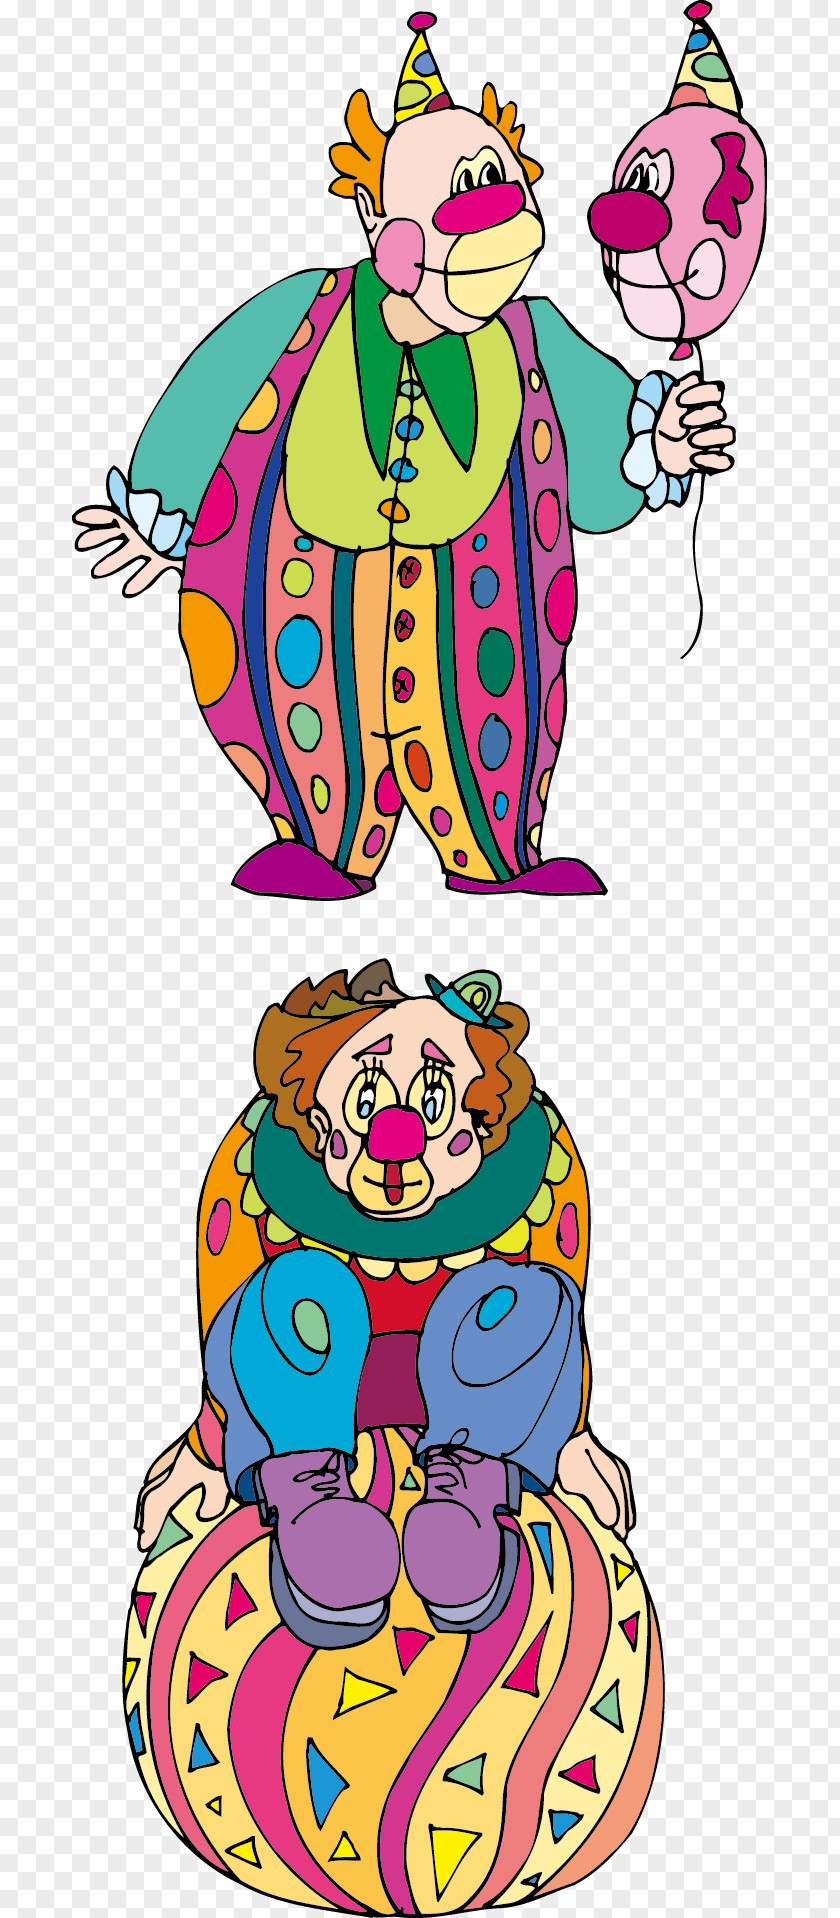 Cartoon Clown Joker Clip Art PNG